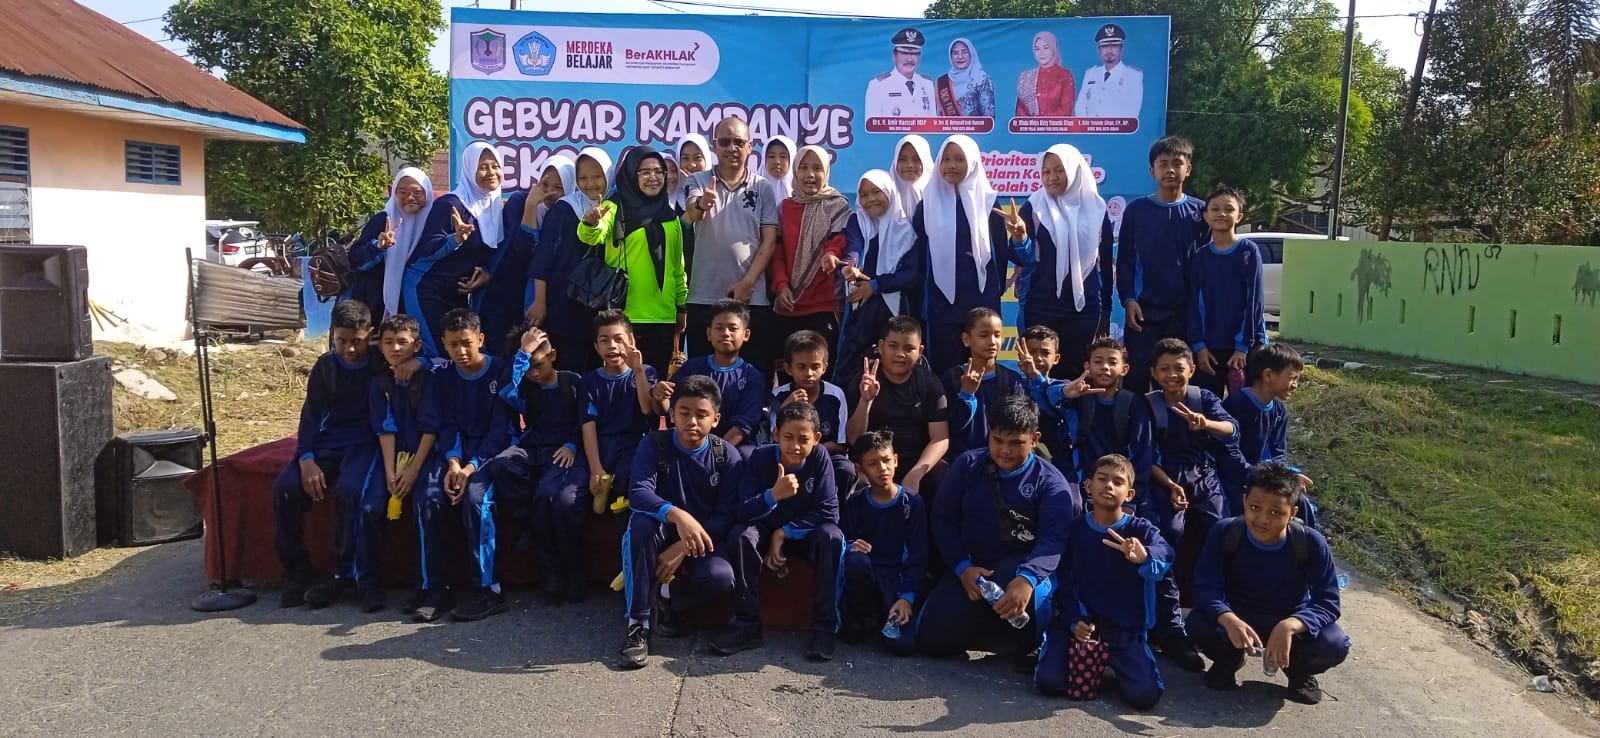 Teks foto: Kepala Dinas Pendidikan Edi Mulia foto bersama dengan para pelajar usai melaksanakan senam masal dalam rangka Gebyar Kampanye Sekolah Sehat. (ist)